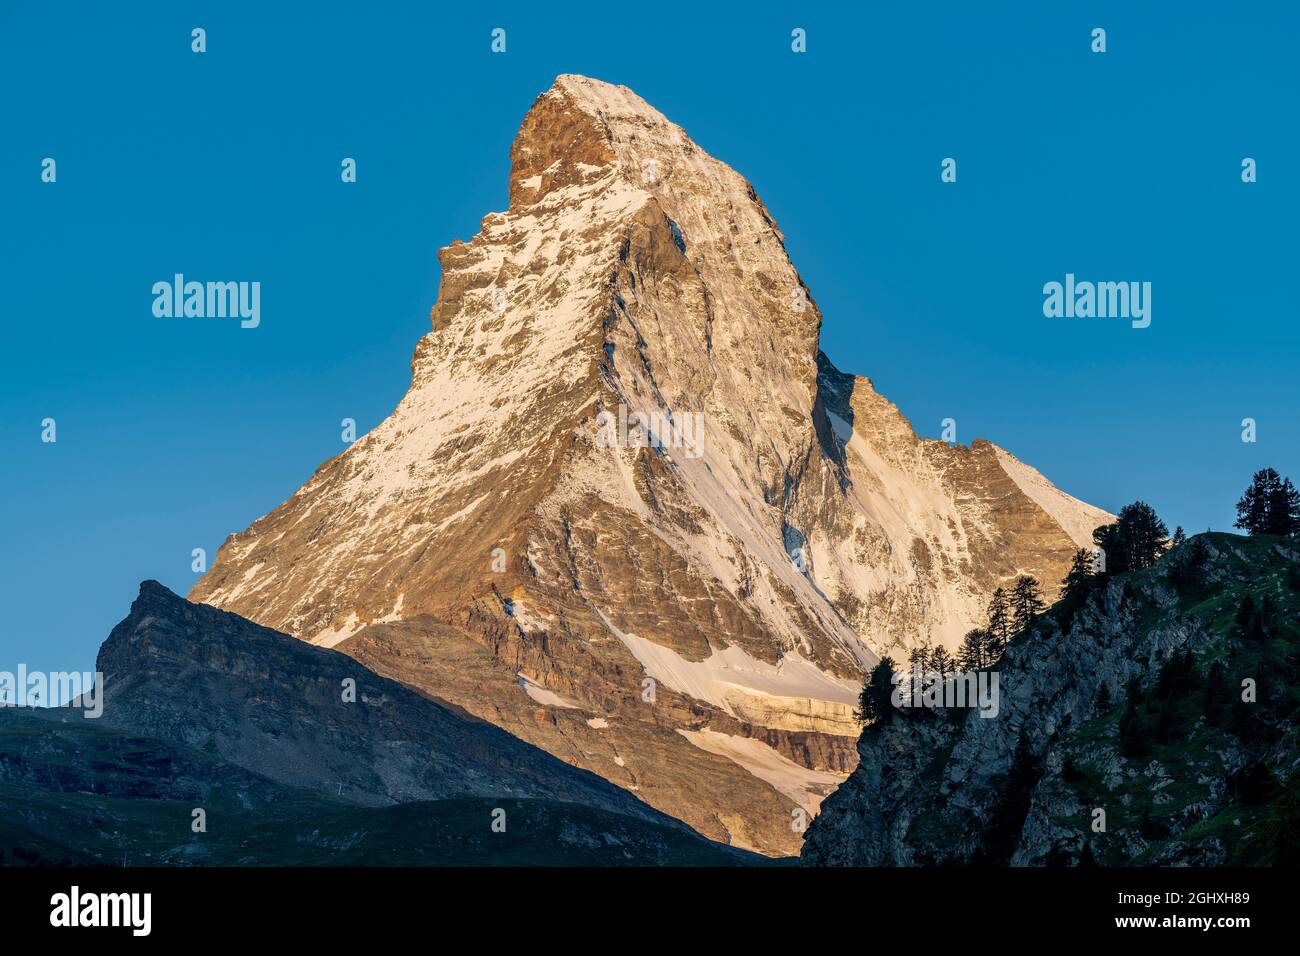 Au lever du soleil, le Mont Cervin Zermatt, Valais, Suisse Banque D'Images